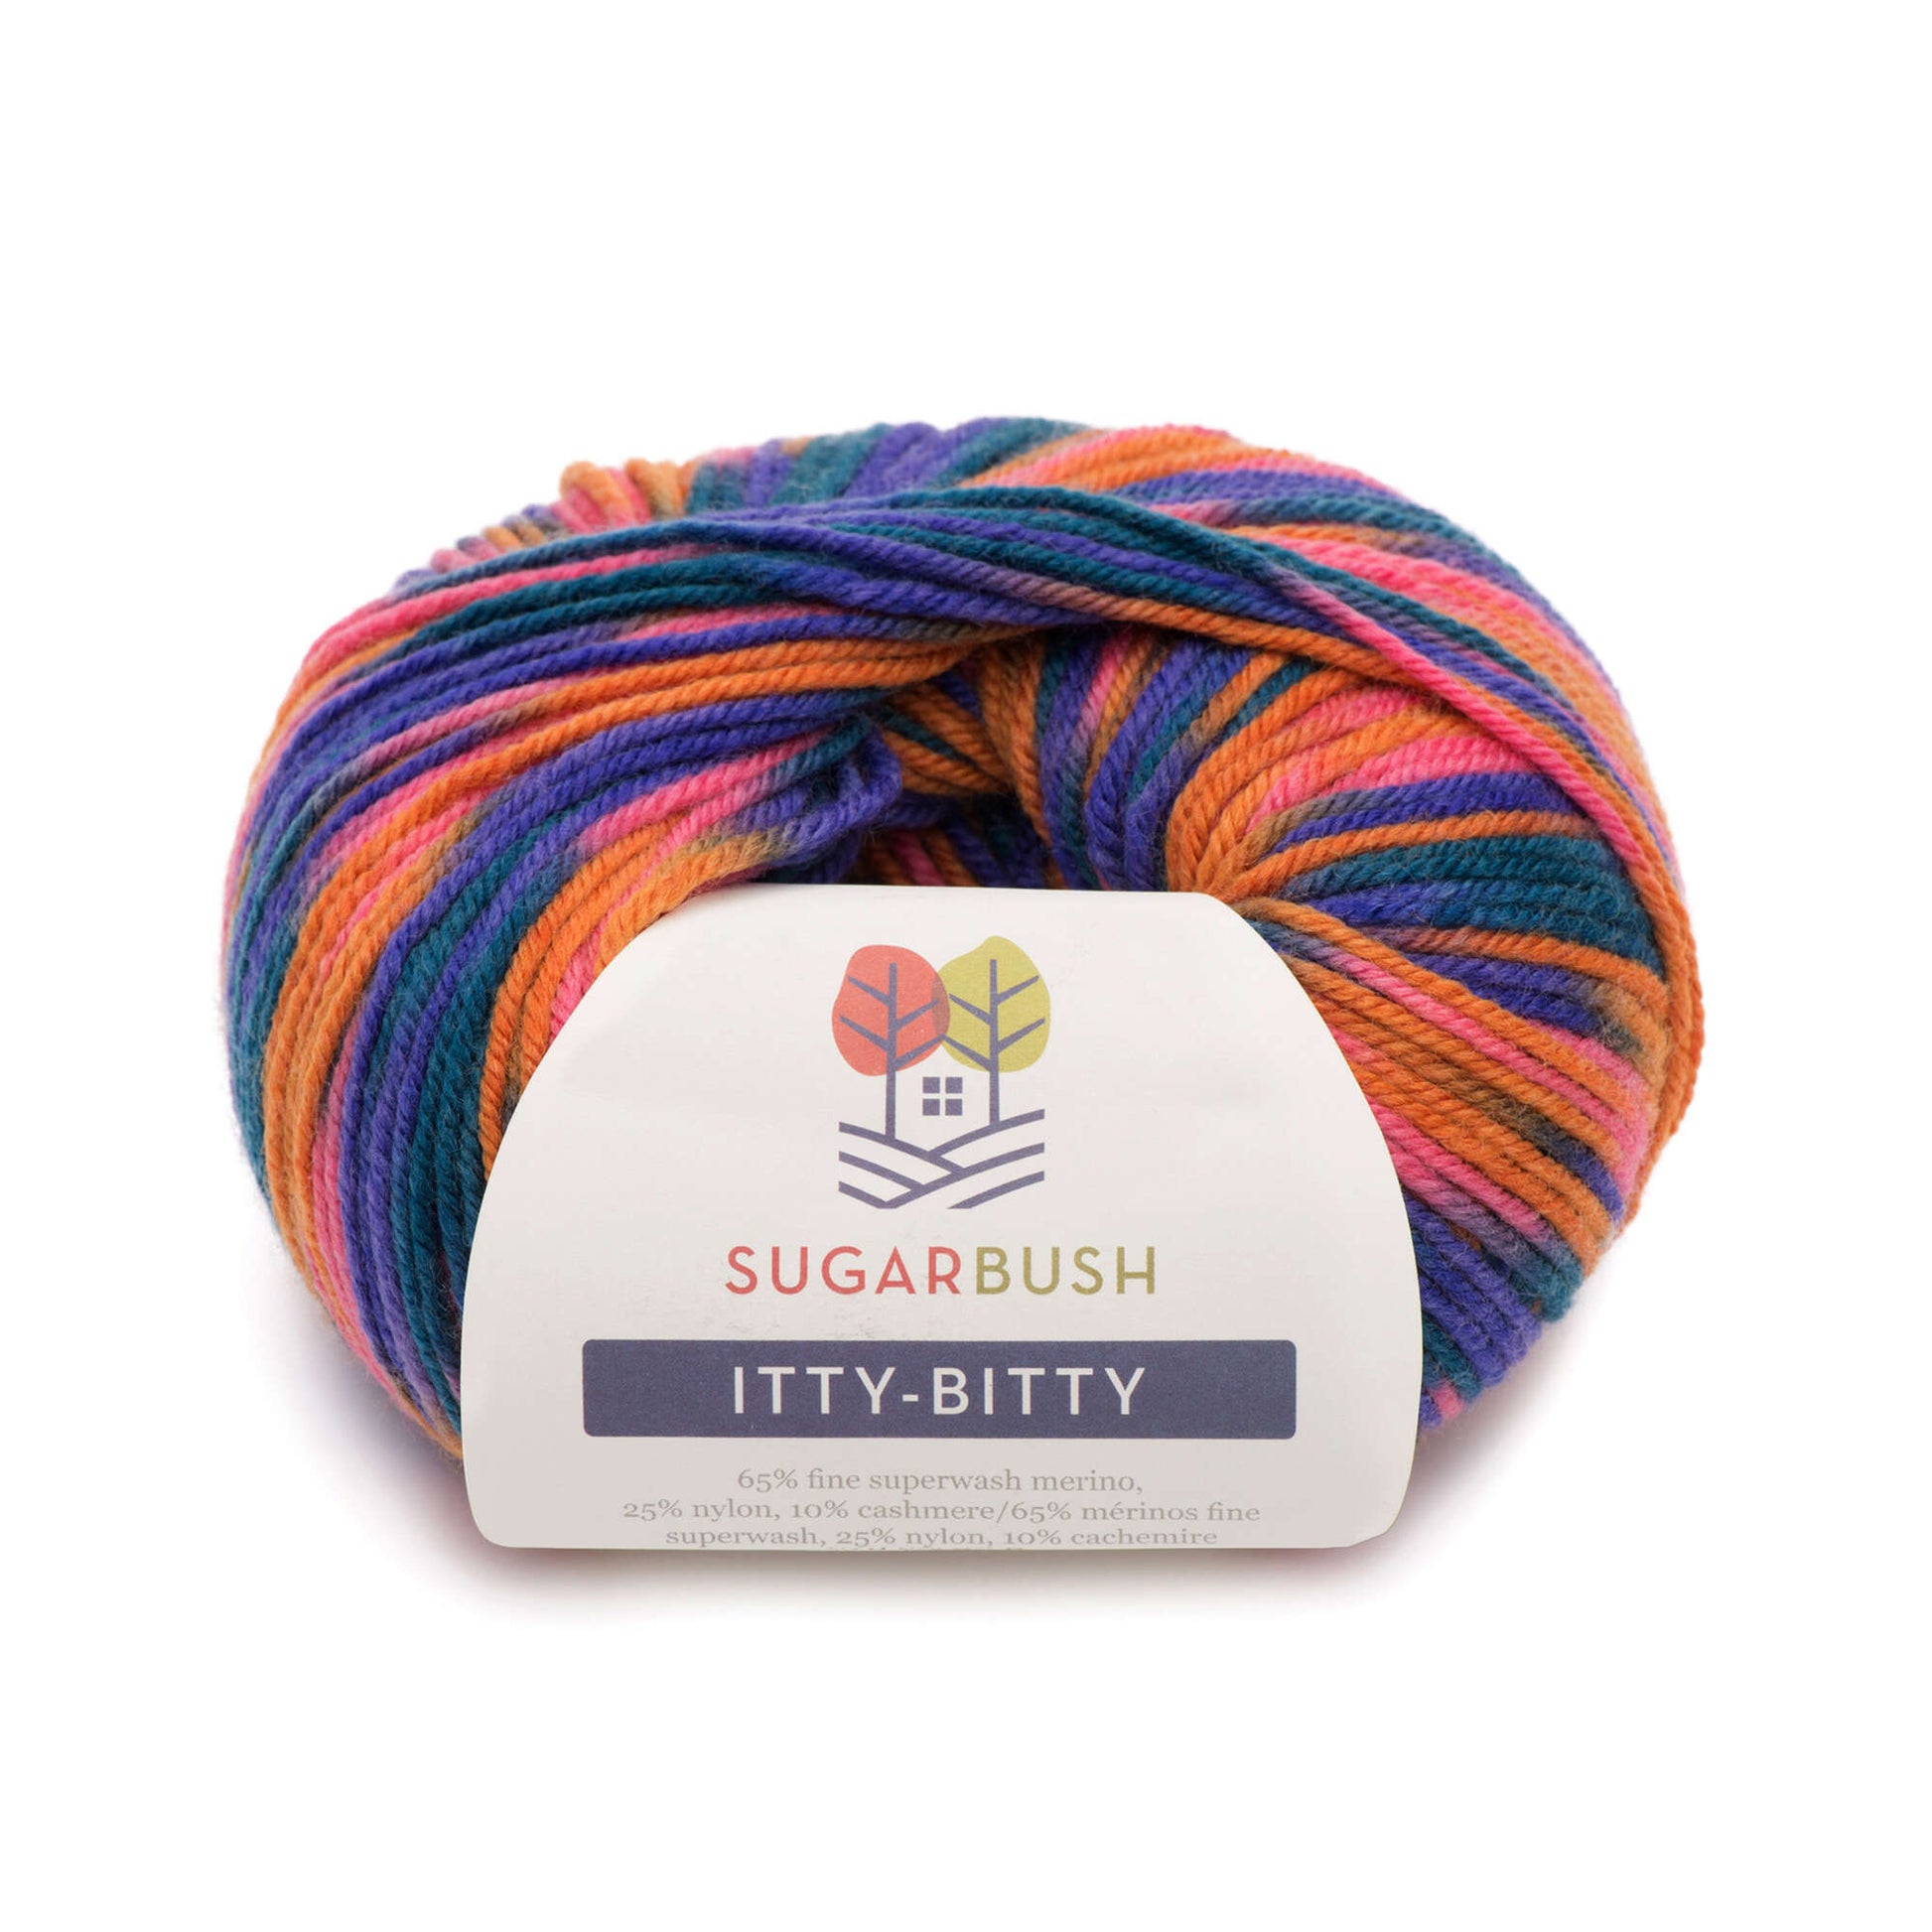 Sugar Bush Itty-Bitty Yarn - Discontinued